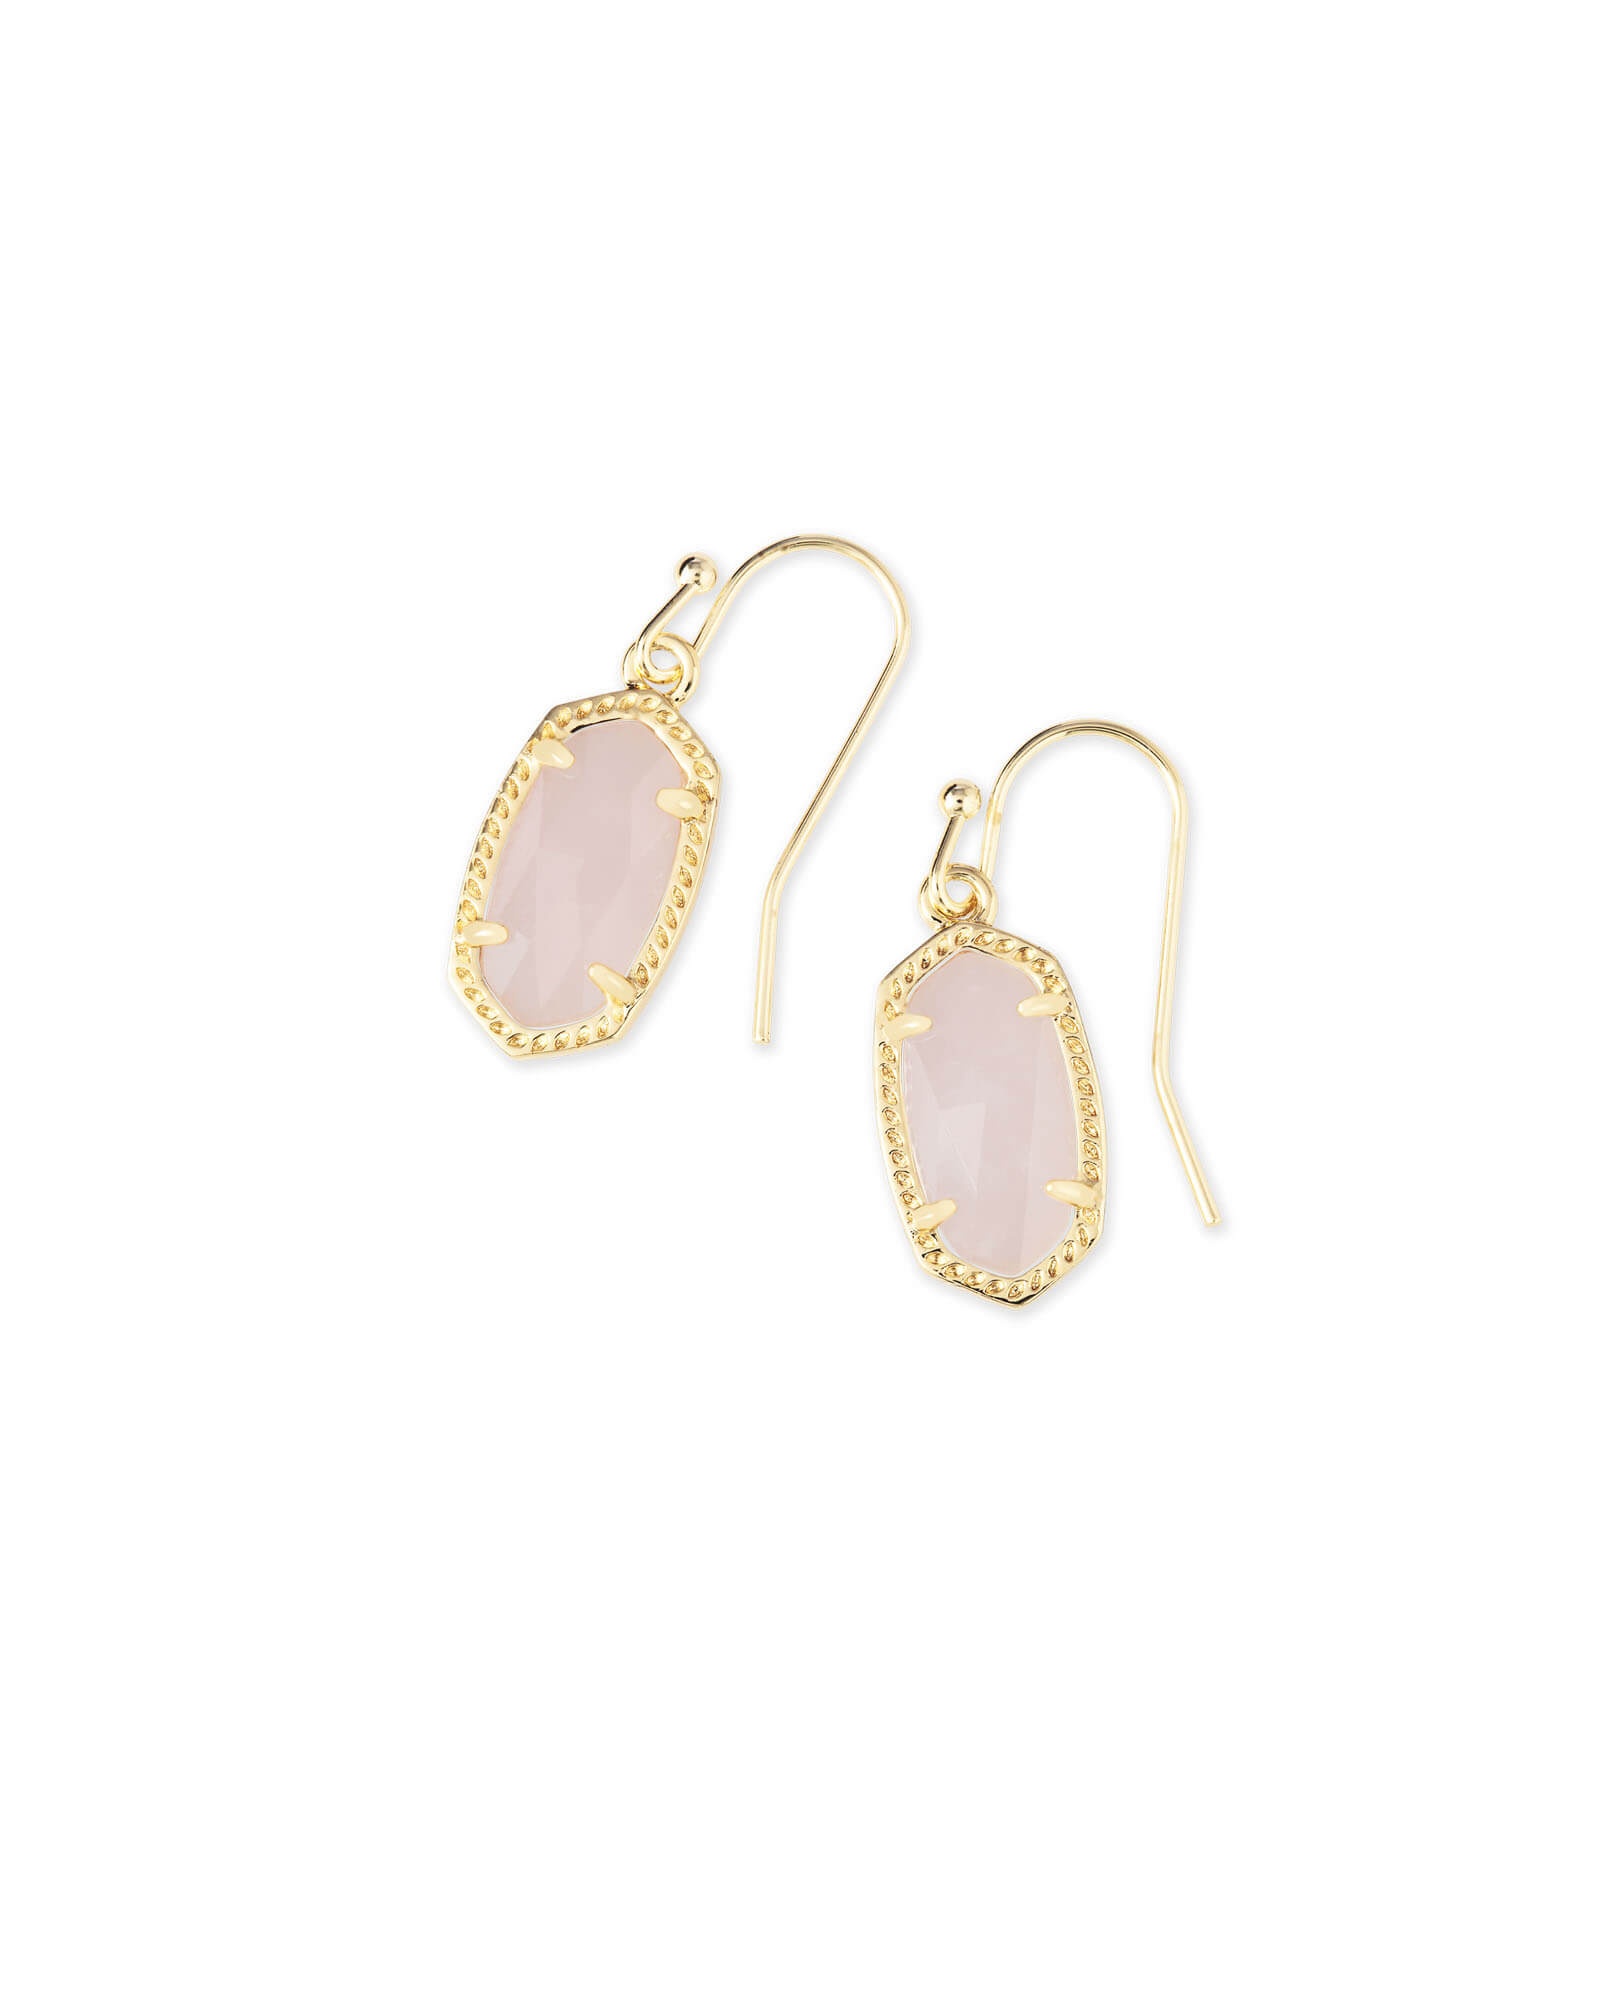 Lee Gold Drop Earrings in Rose Quartz | Kendra Scott